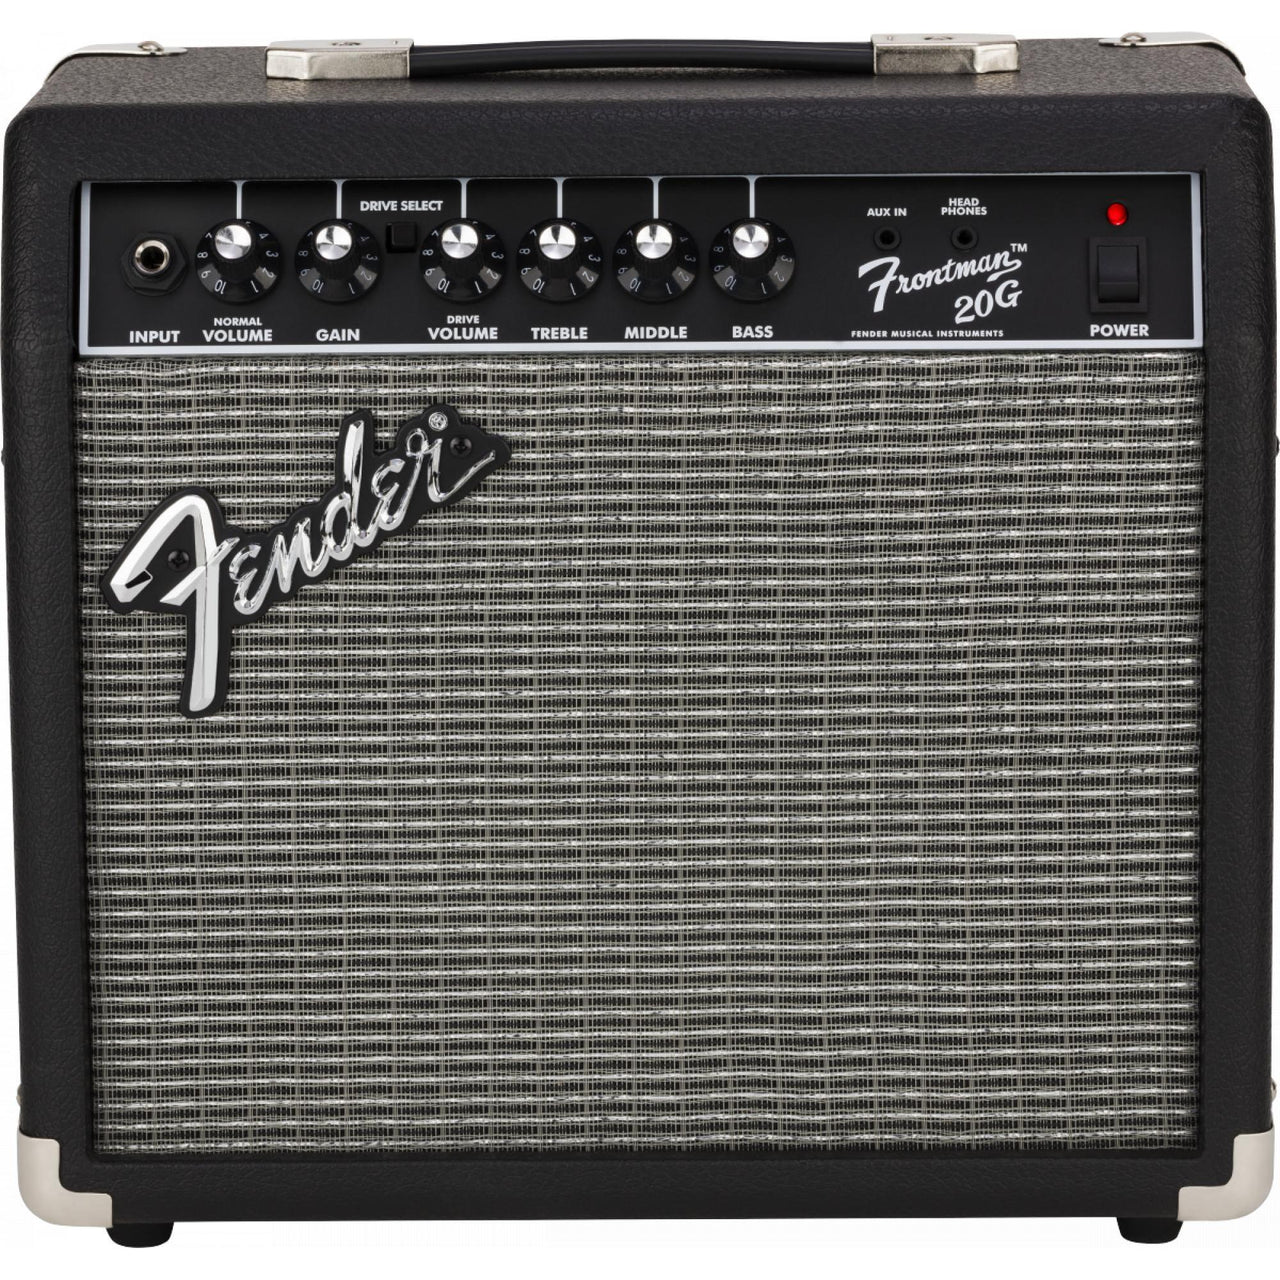 Amplificador Fender P/guitarra Frontman 20g 120v, 2311500000